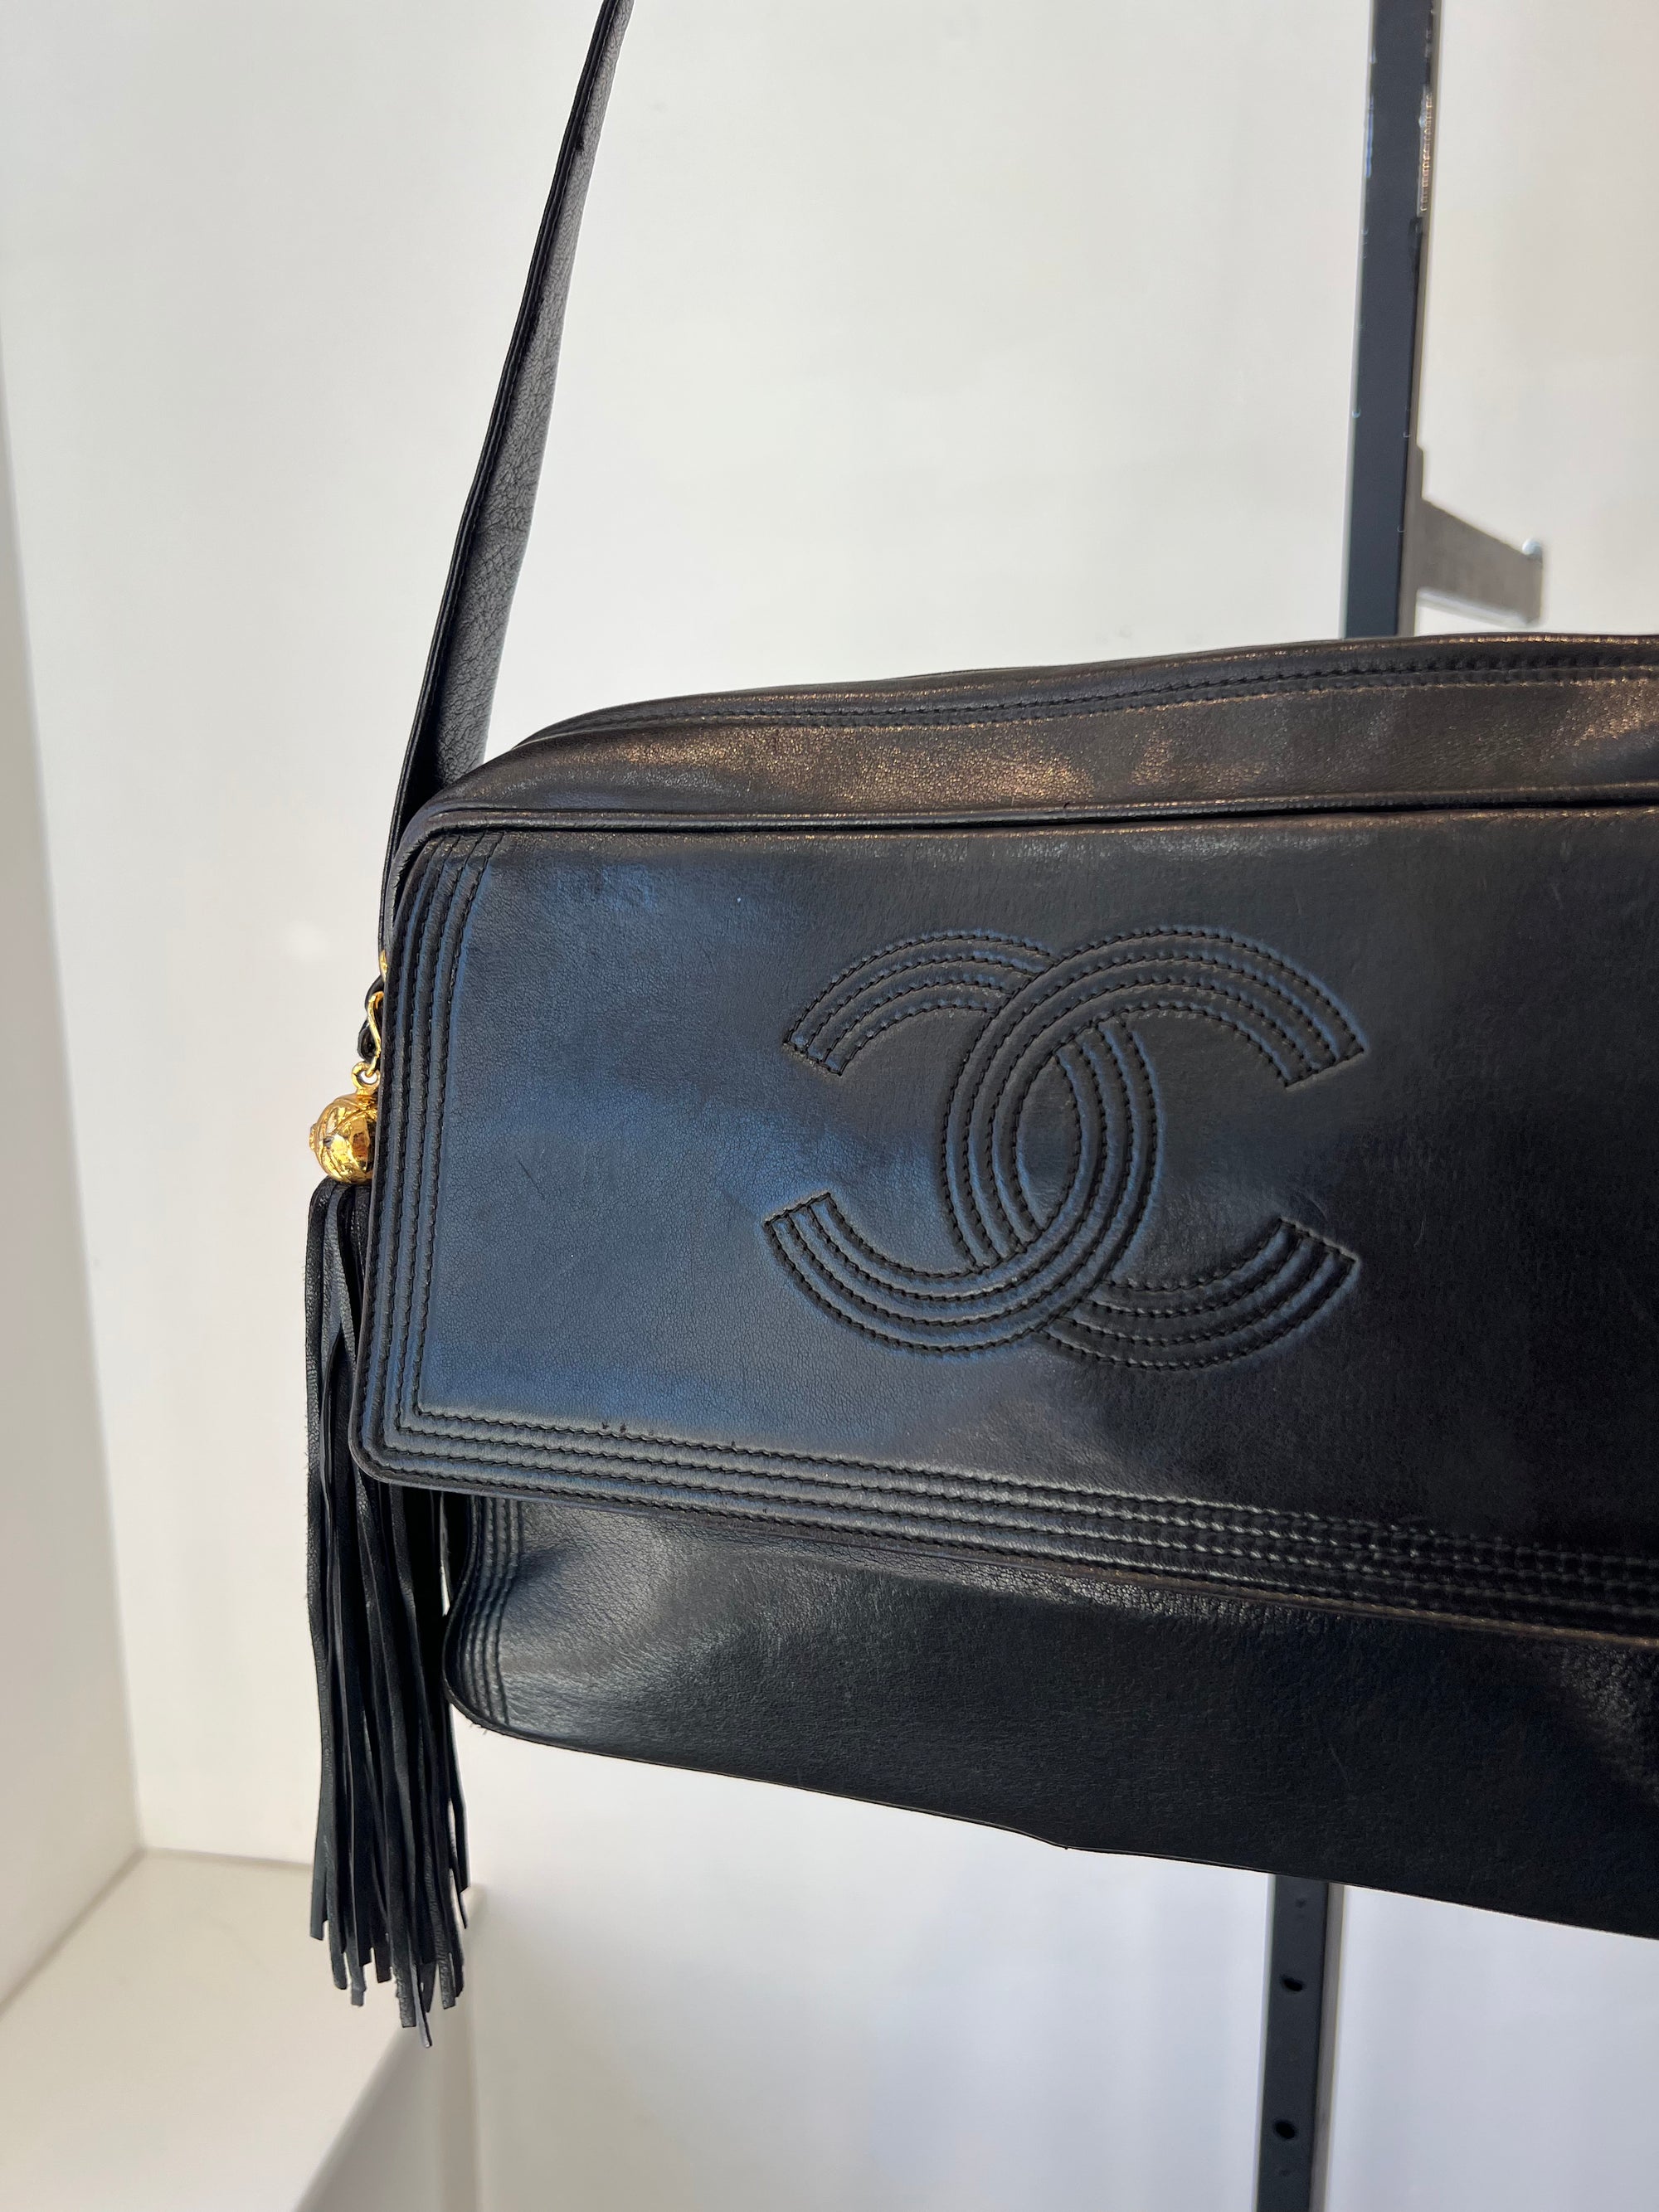 Chanel Black Vintage Flap Bag with Tassel